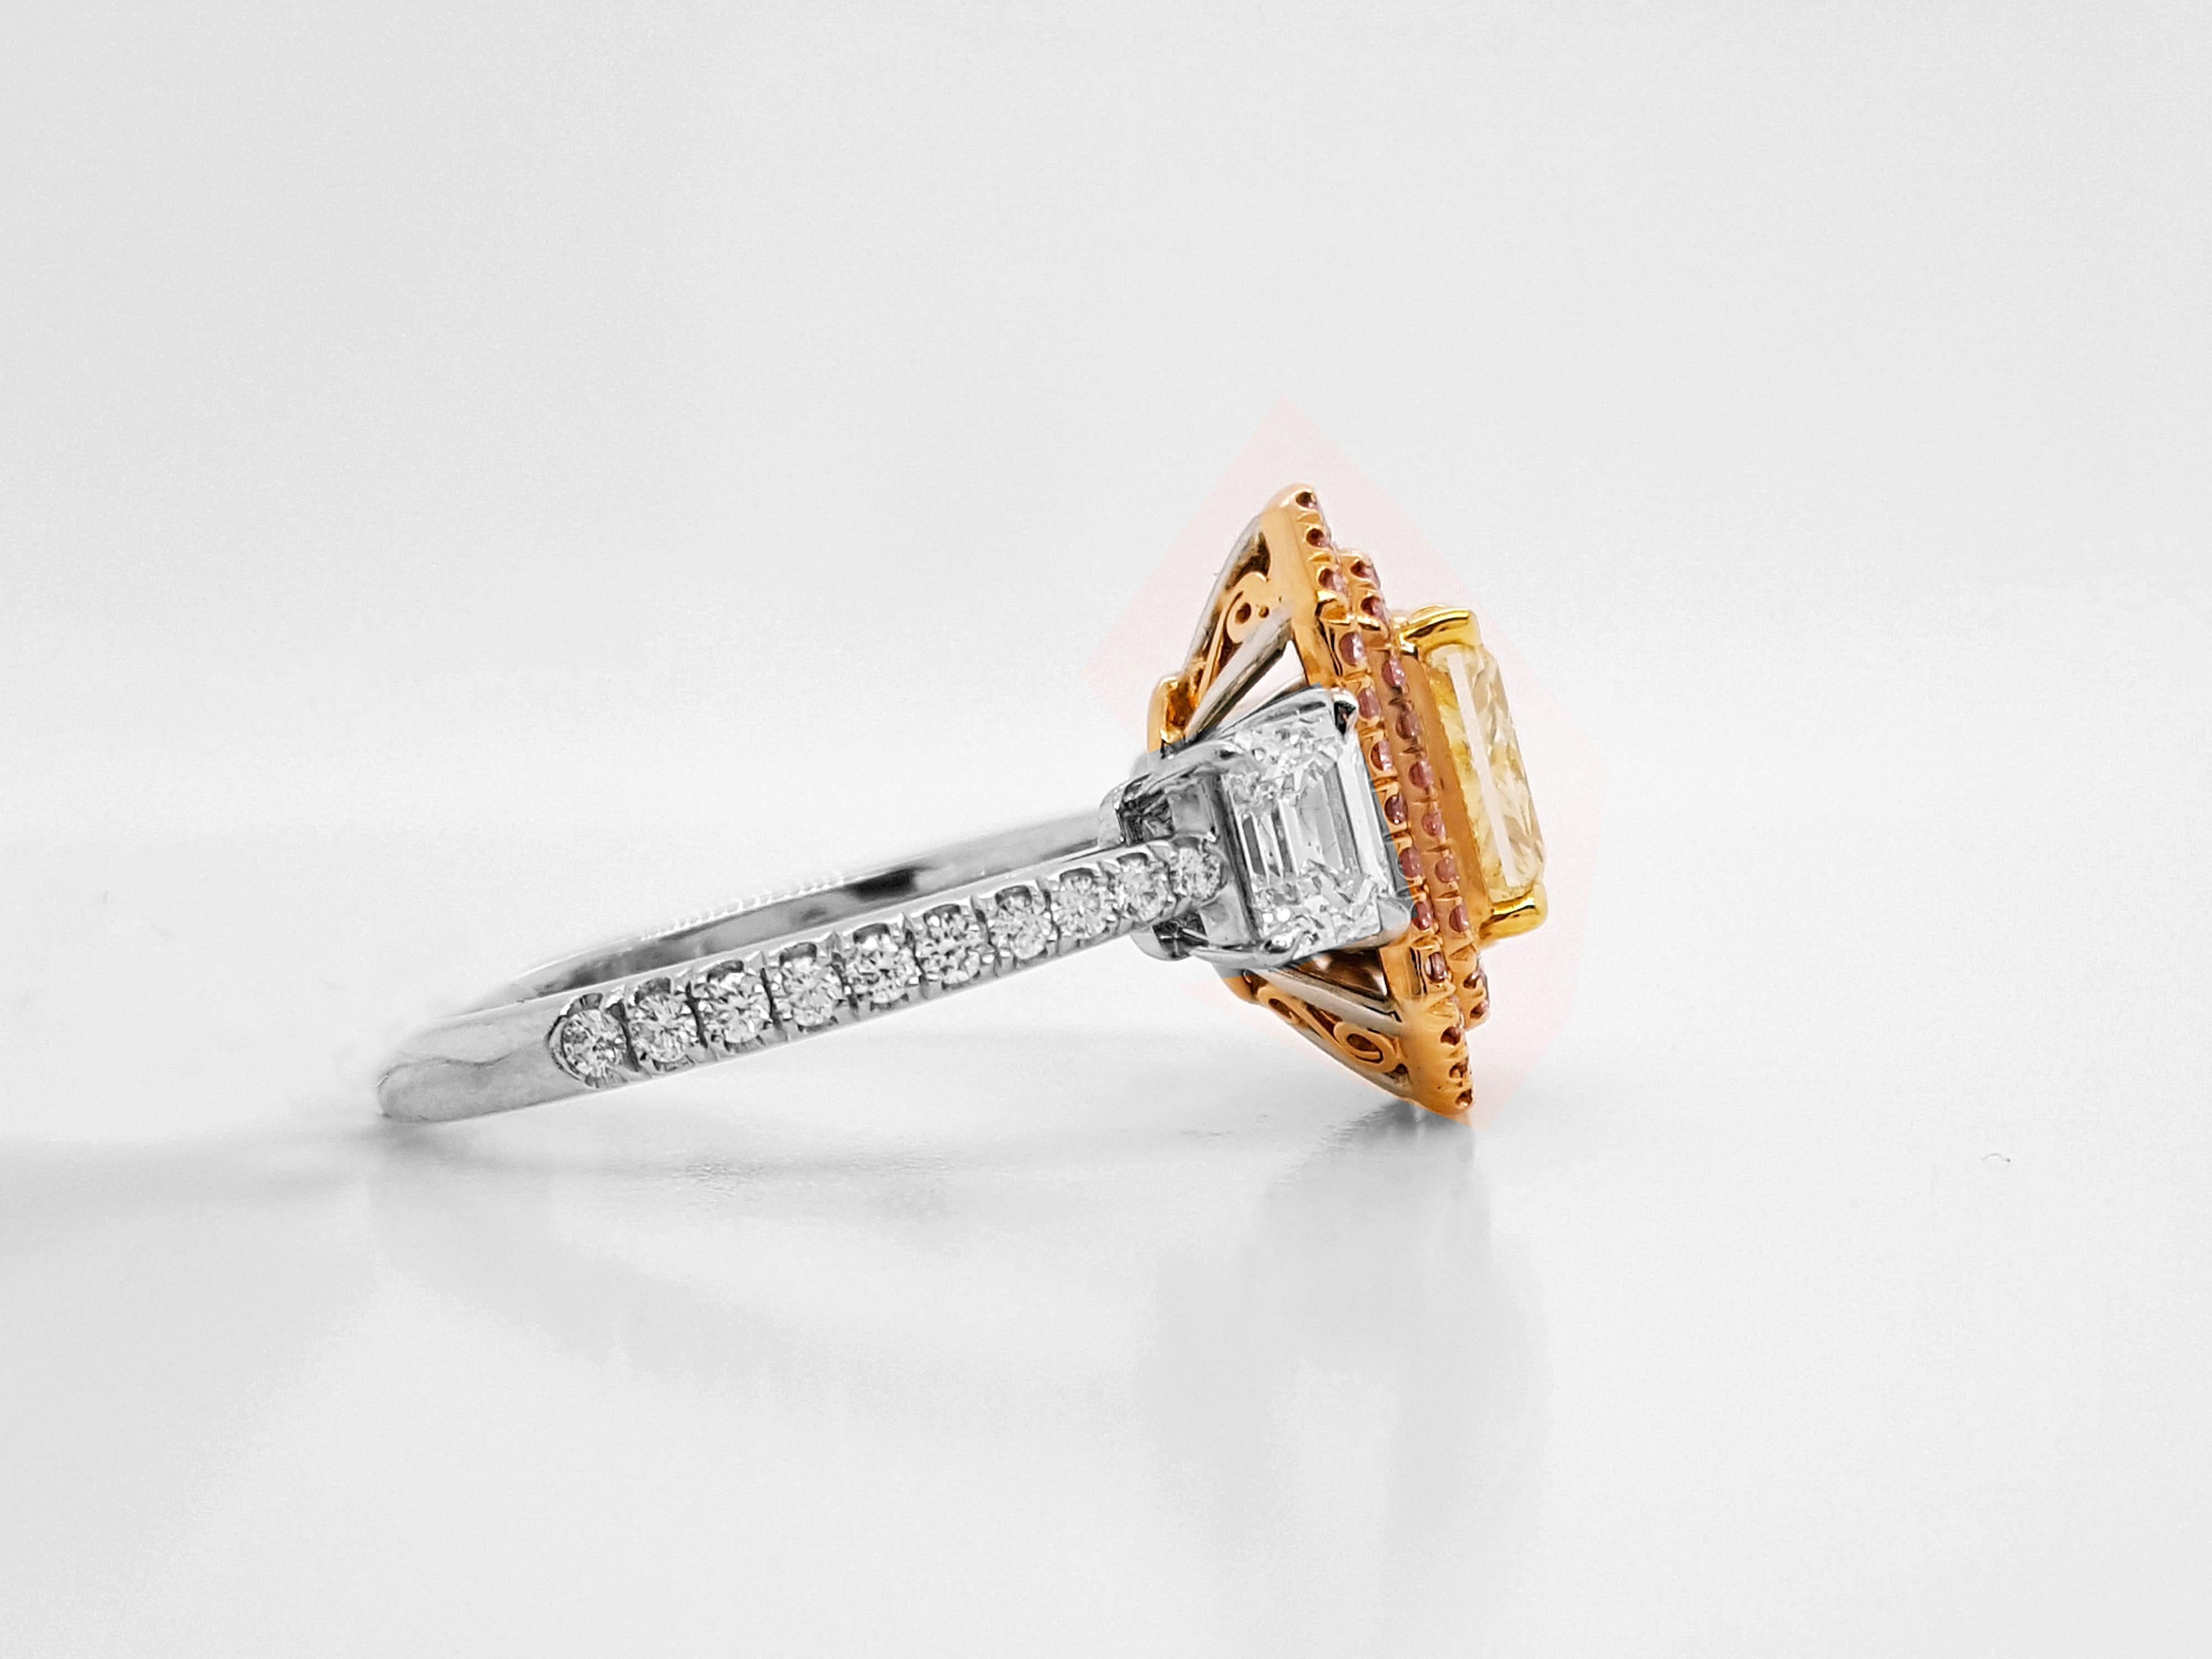 Magnifique bague de fiançailles à trois pierres, ornée d'un diamant radiant de 1,11 carat de couleur jaune fantaisie, certifié VS1 par le GIA, serti dans un double halo flanqué de deux diamants de taille émeraude d'un poids approximatif de 0,69